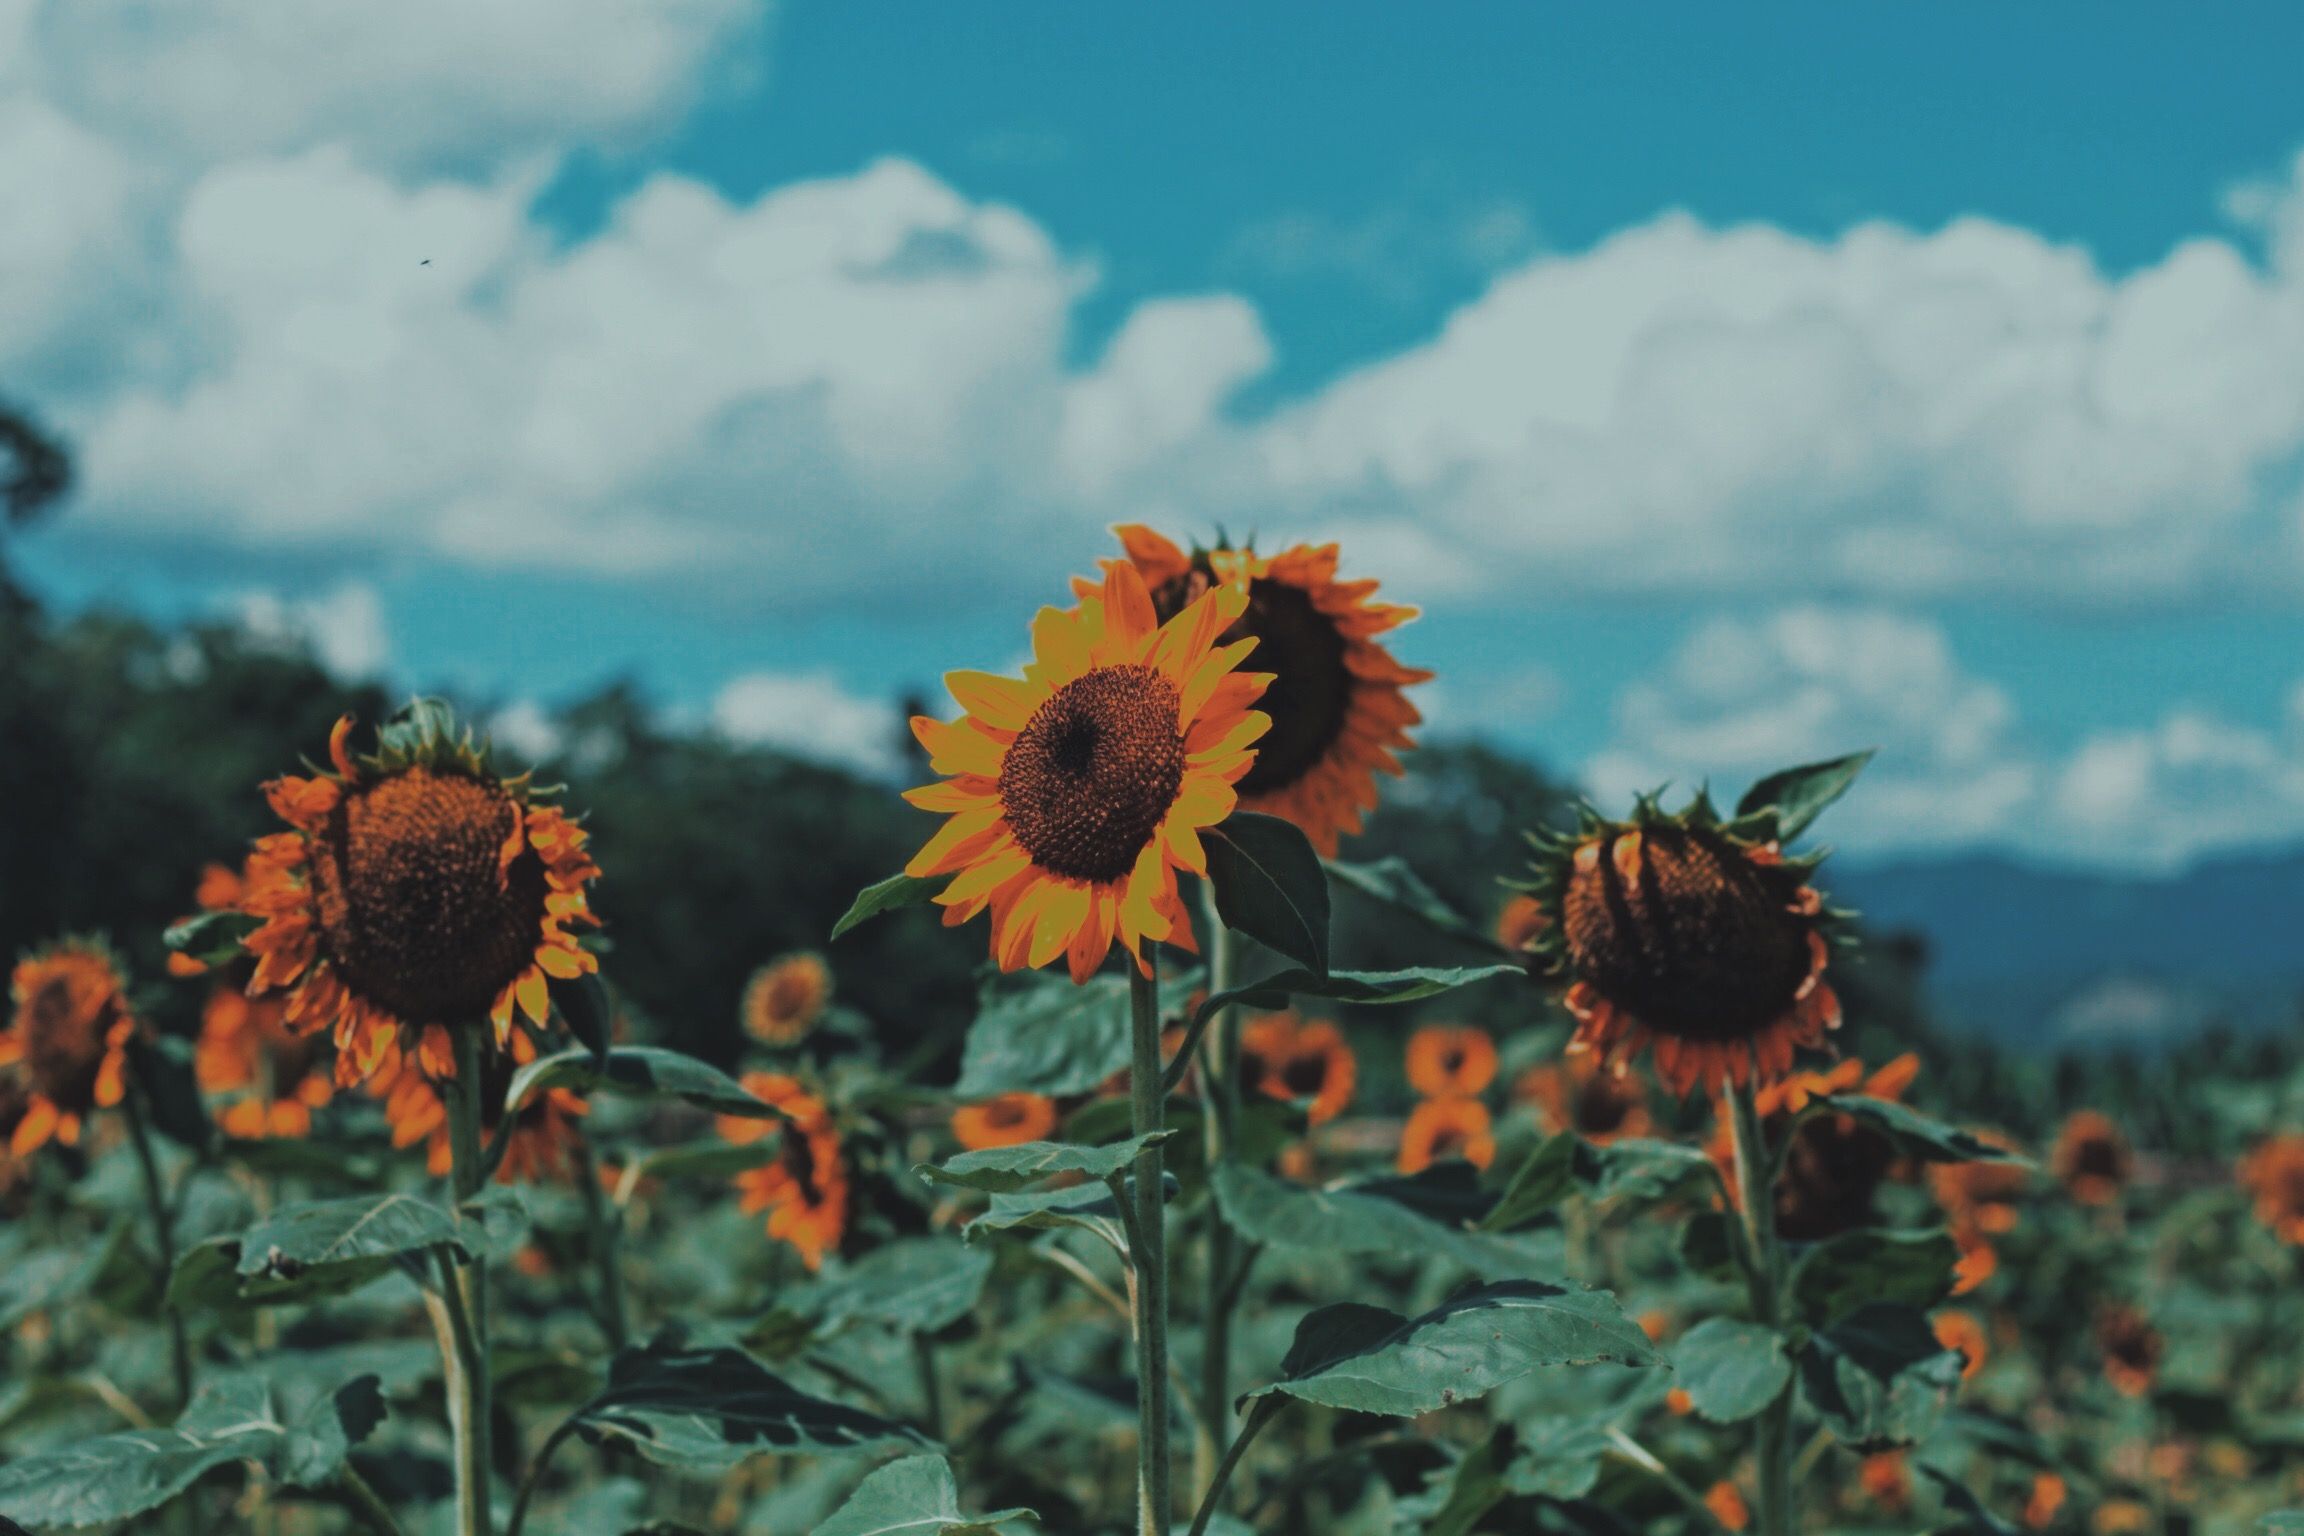 Tải ảnh nền sunflower background pc đẹp với chất lượng cao